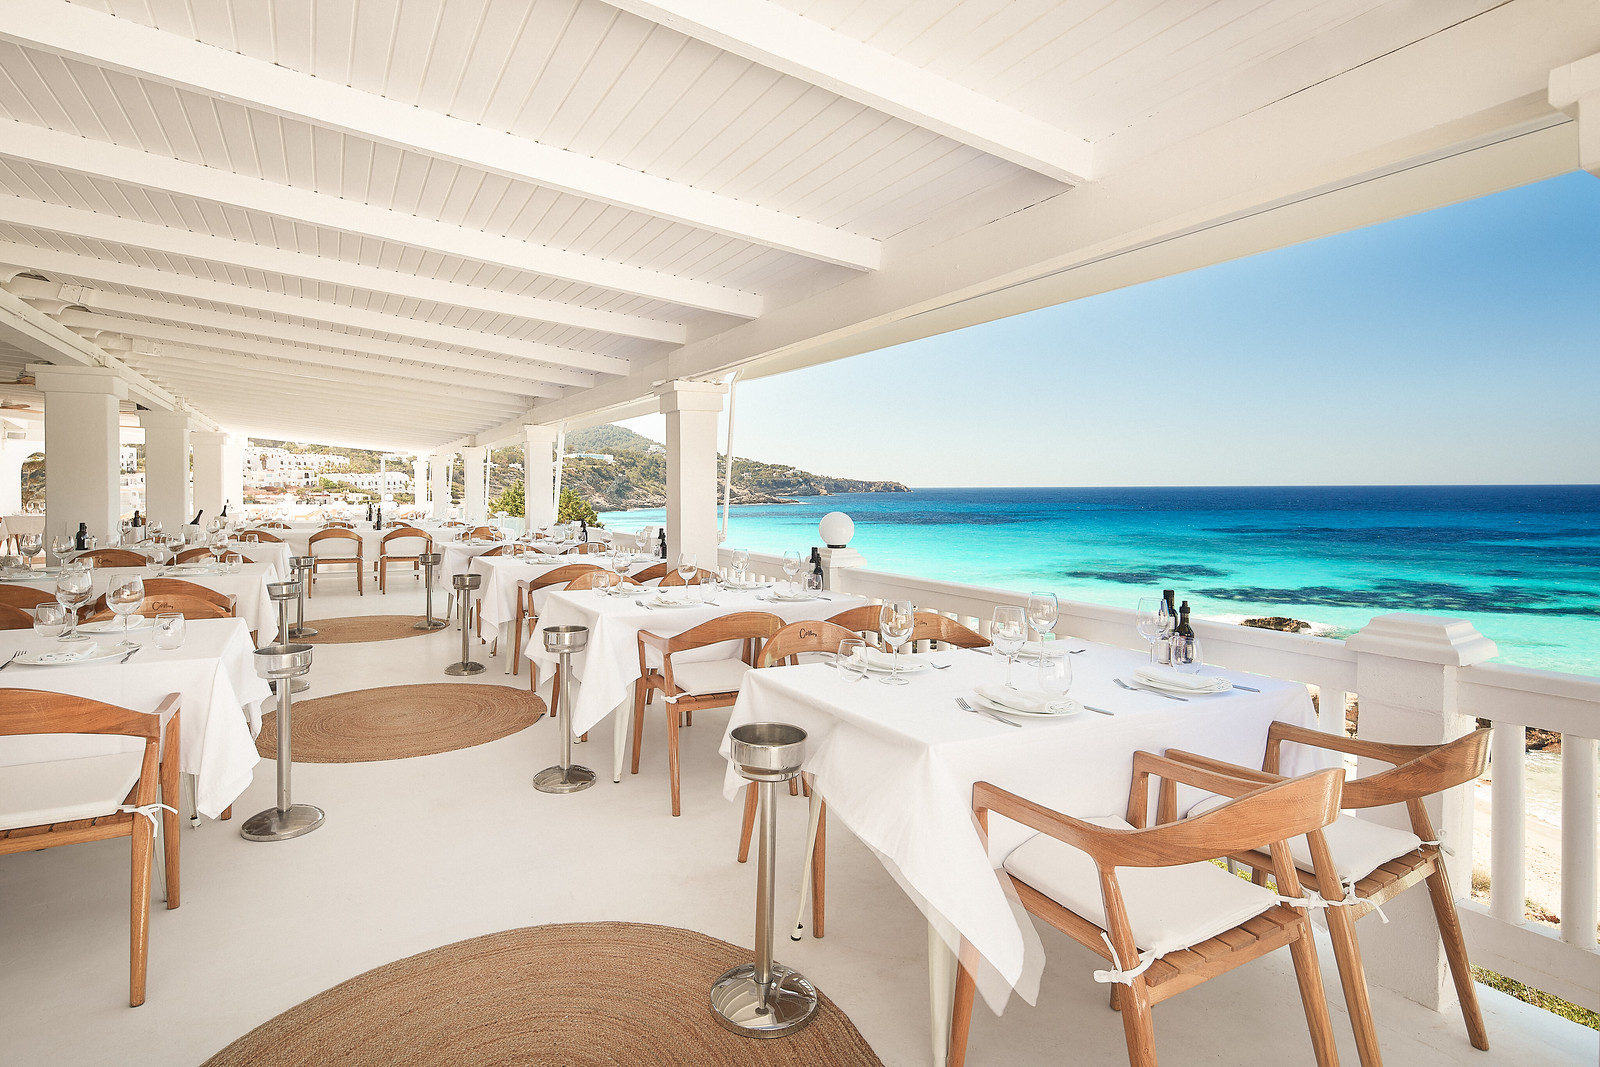 White Ibiza Beach Restaurants Guide: Cotton Beach Club